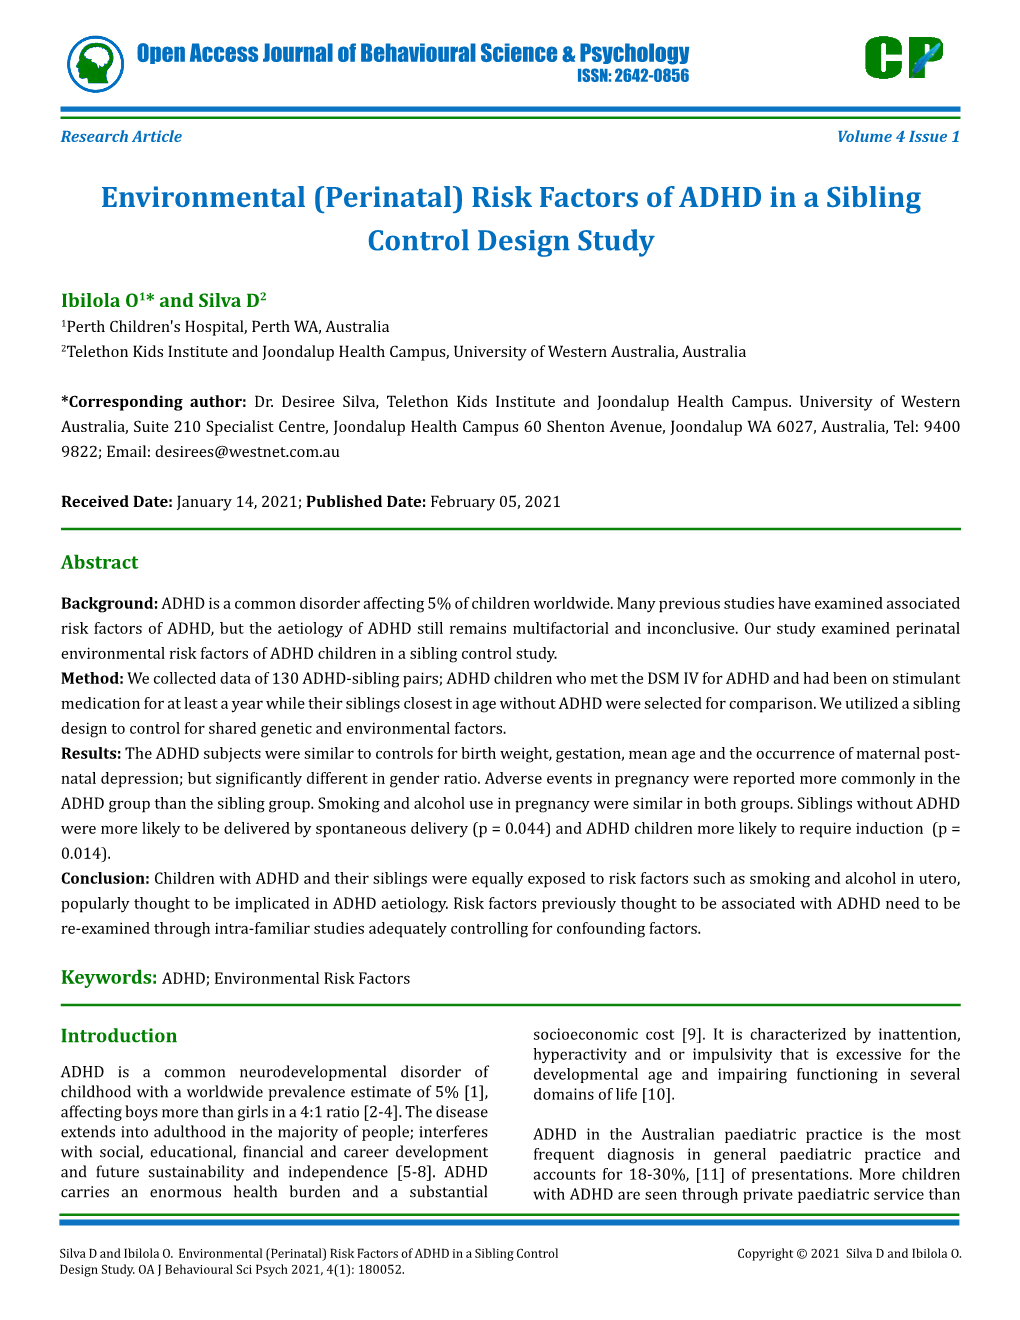 (Perinatal) Risk Factors of ADHD in a Sibling Control Design Study